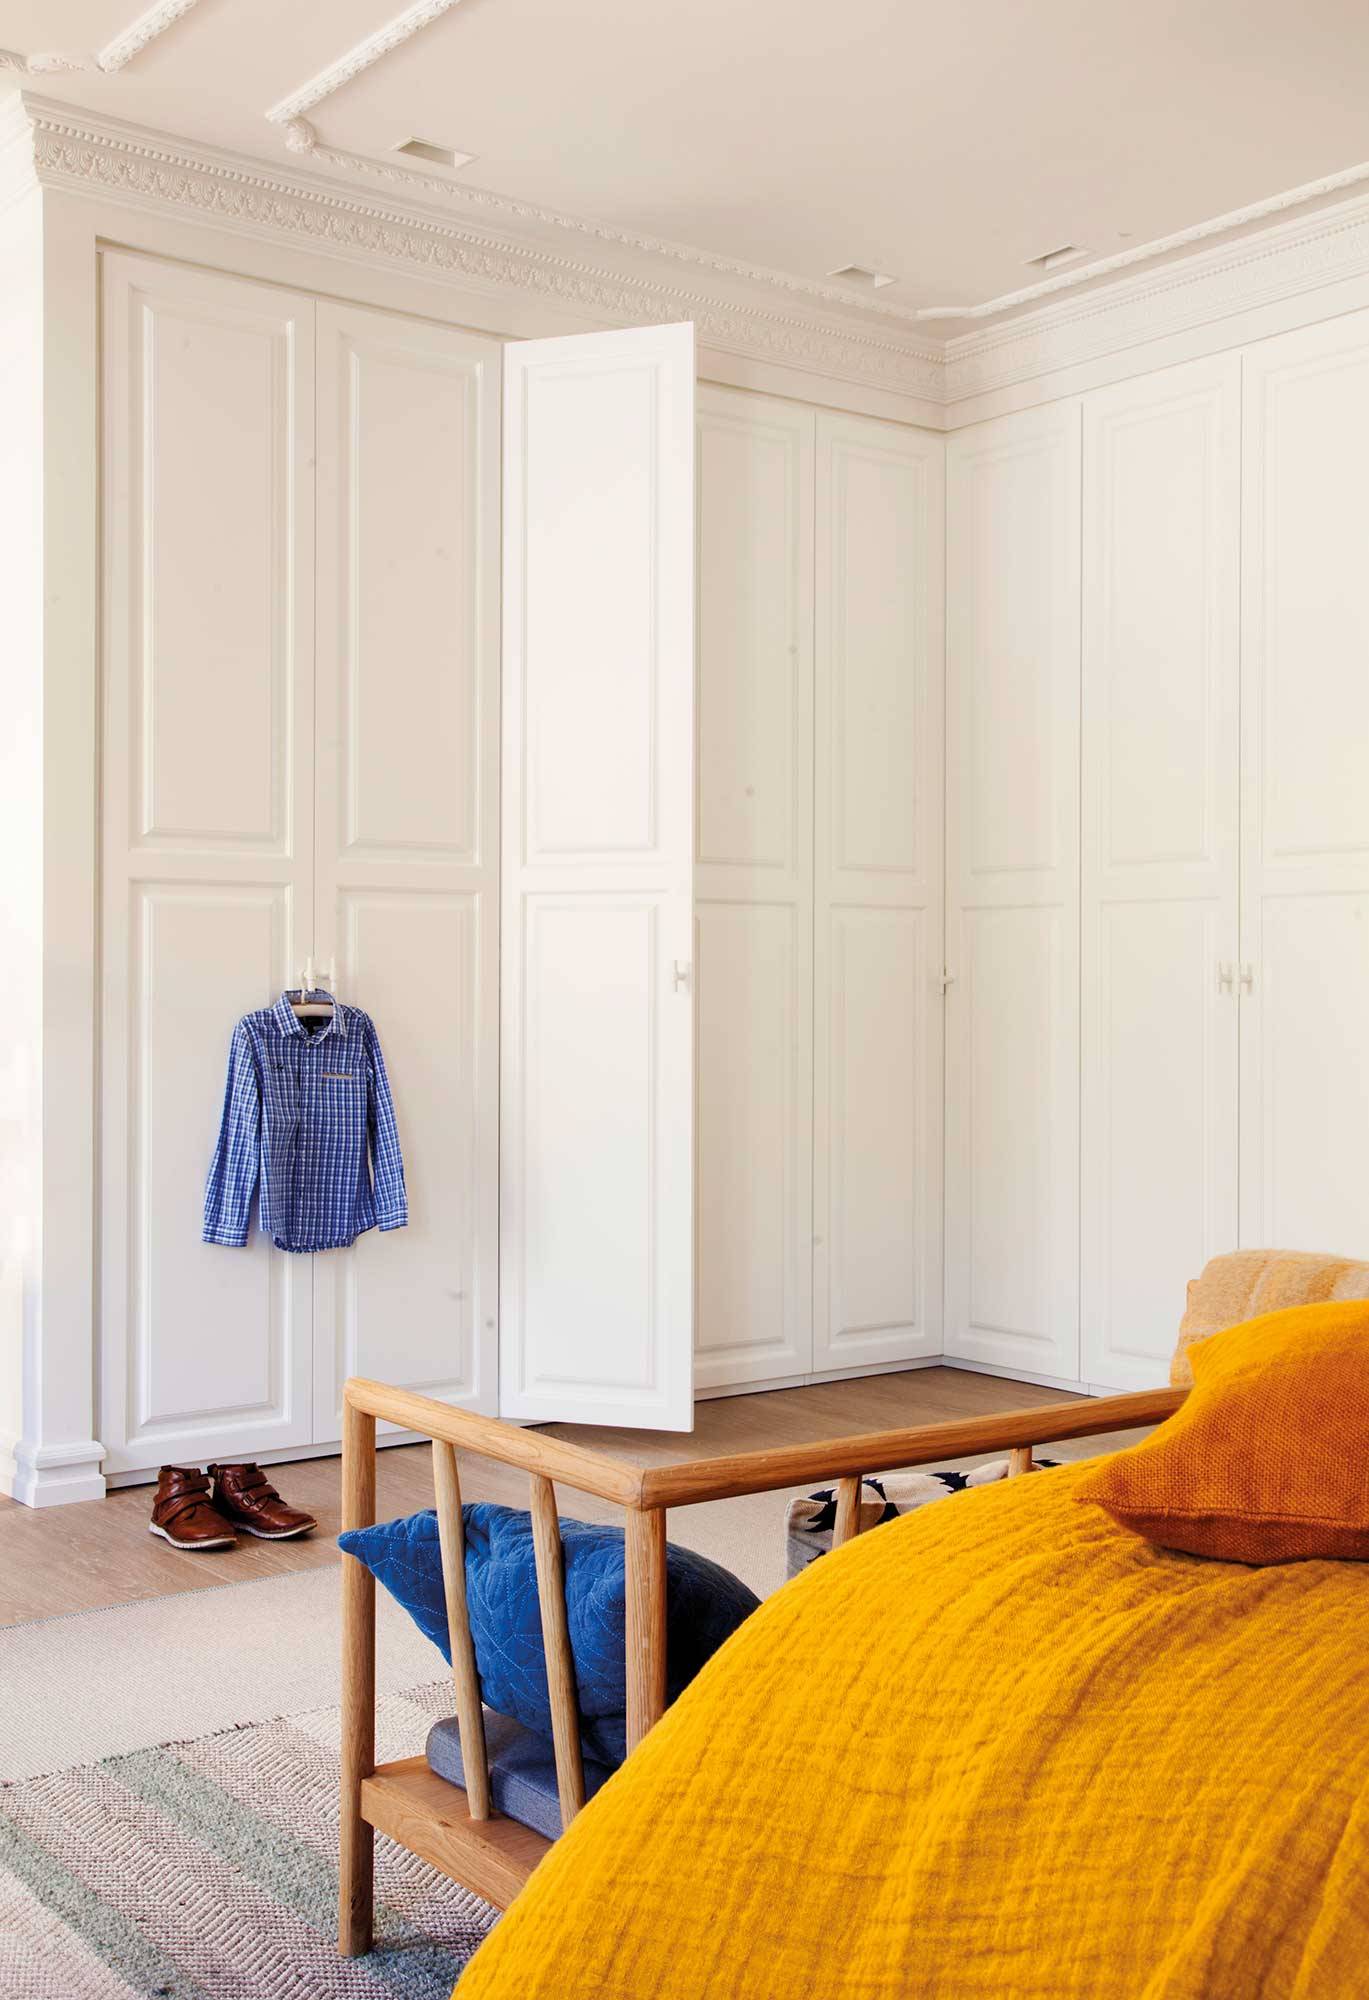 Dormitorio clásico y armario blanco actual con molduras_00506990